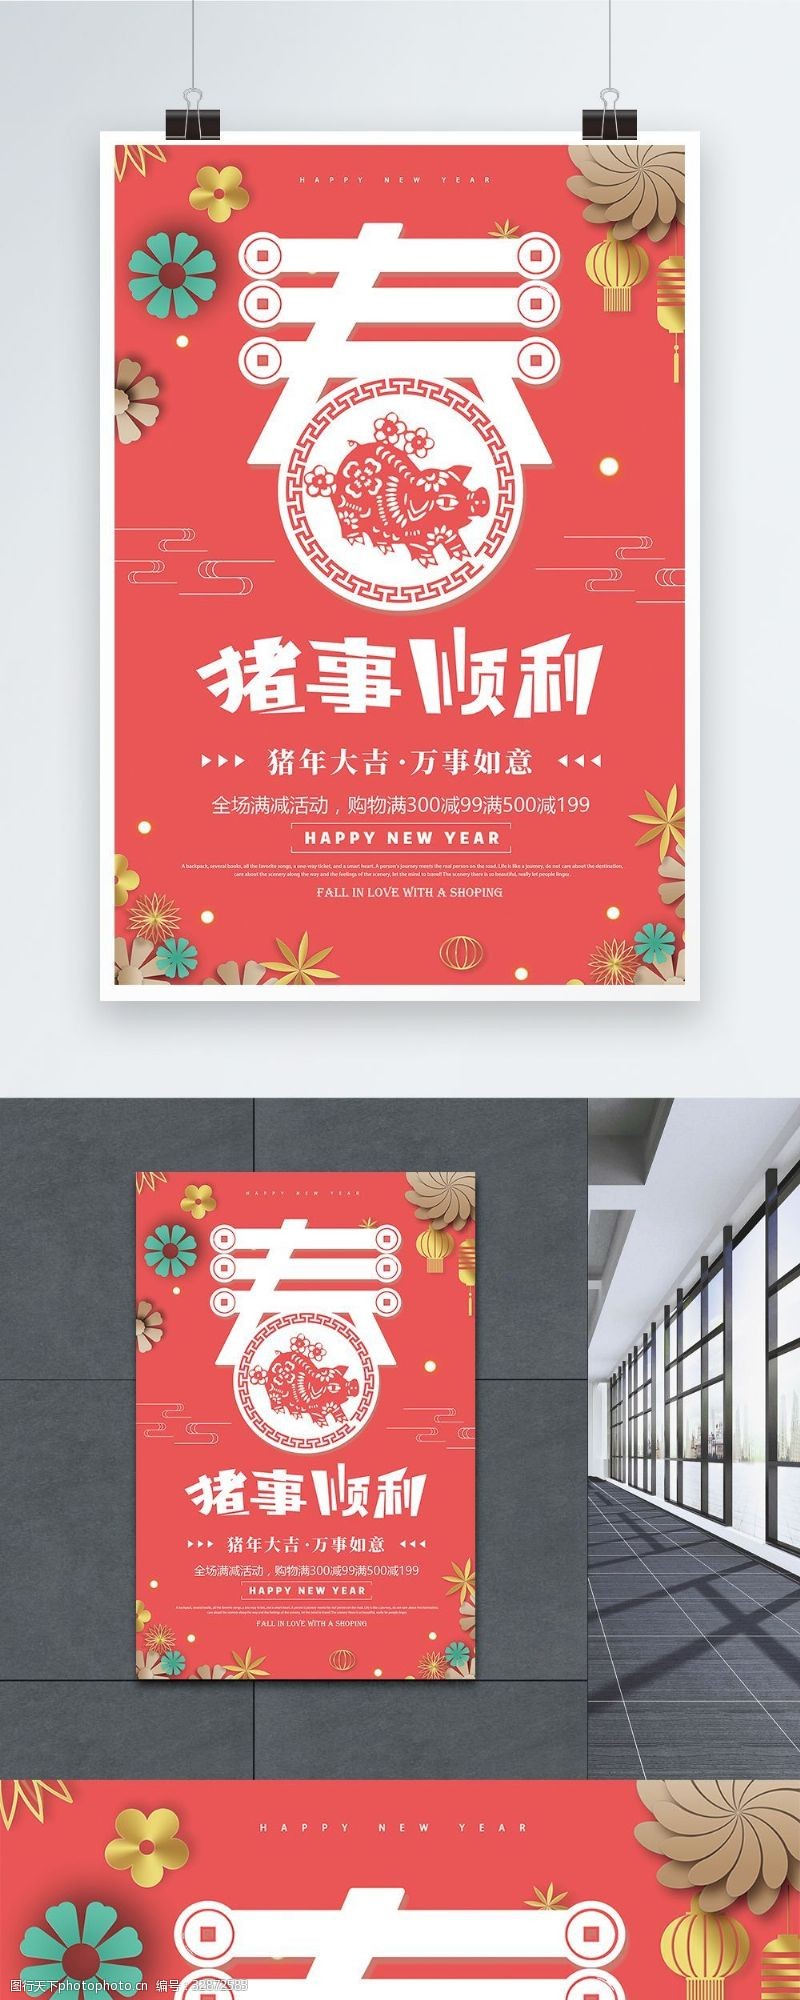 猪年吉祥珊瑚粉2019猪事顺利新年促销海报